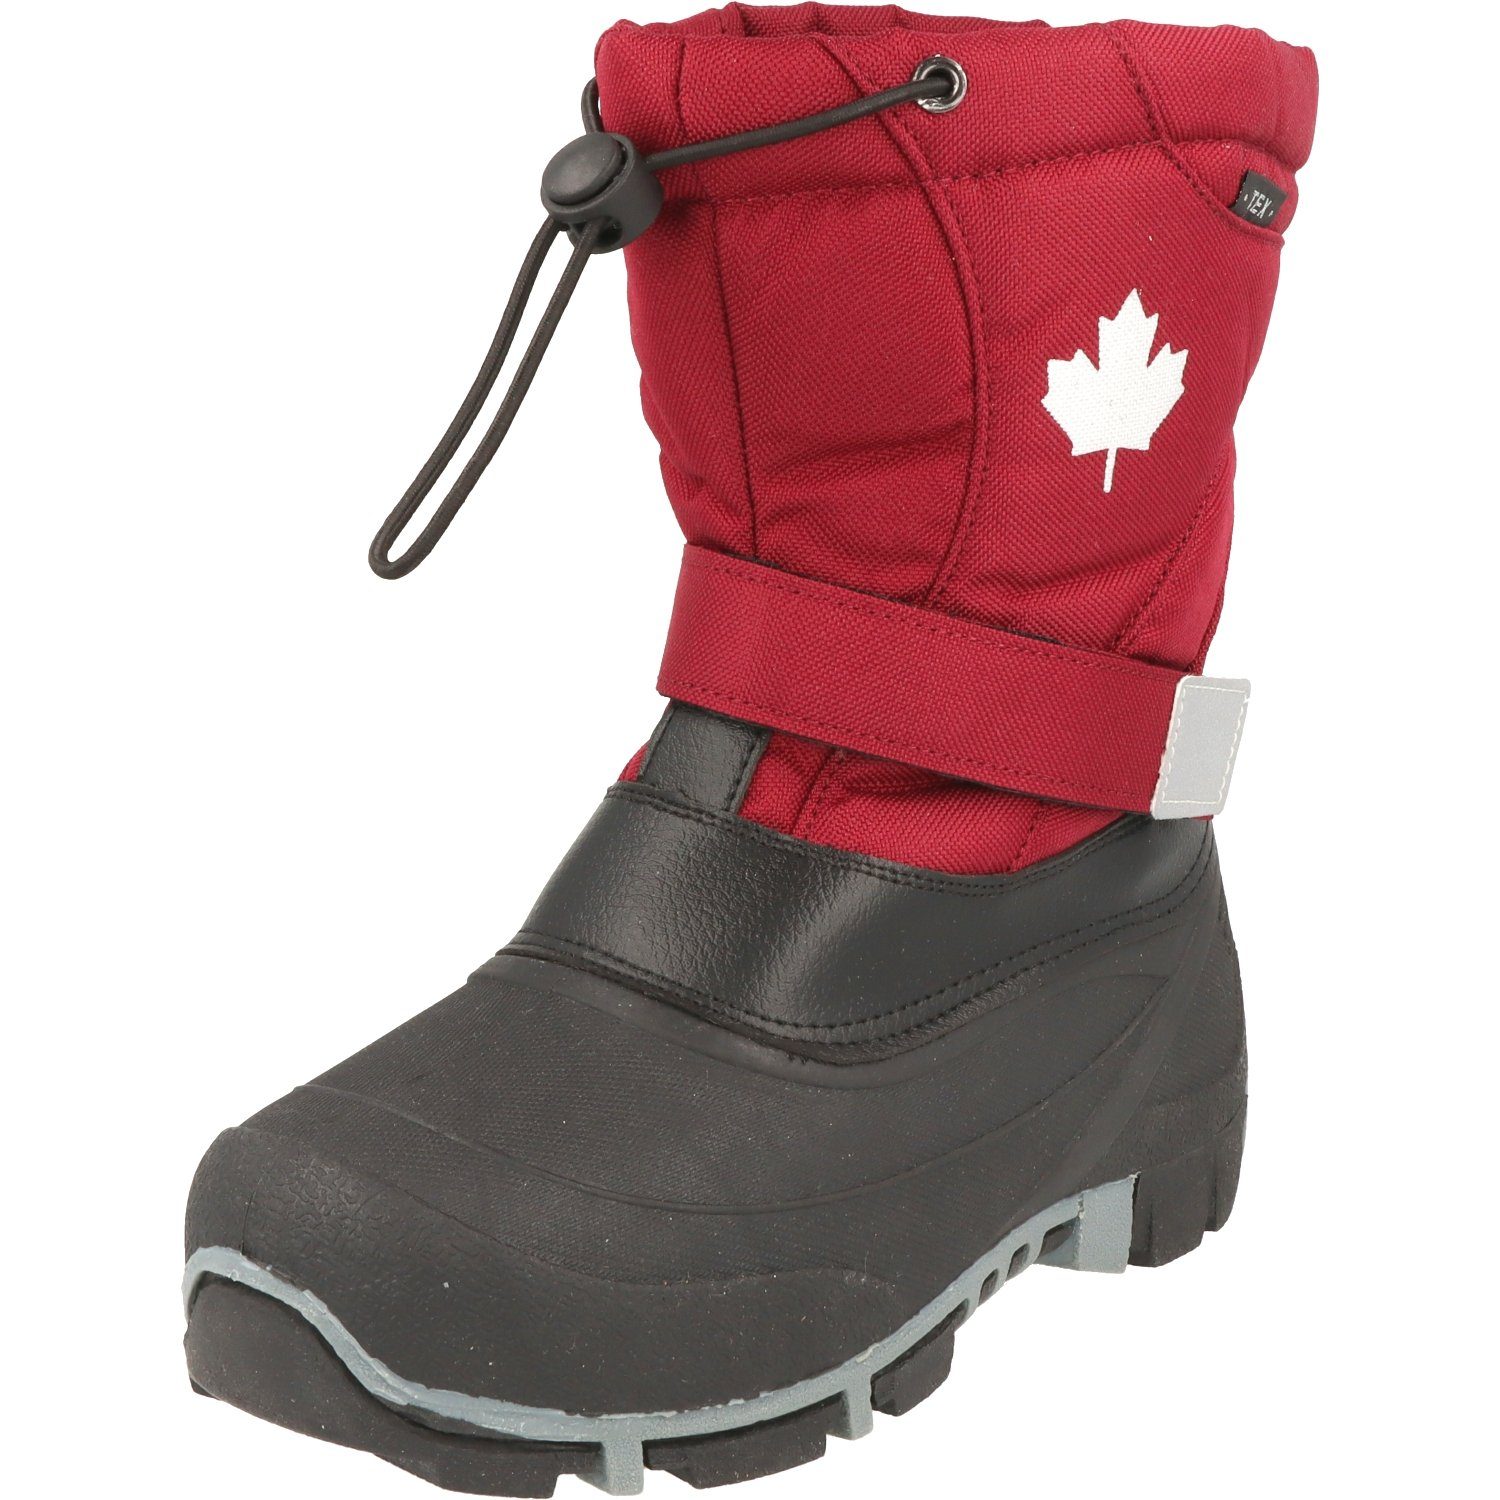 Snow CANADIANS Boots Berry Stiefel Winter TEX Mädchen Wasserabweisend Schnee 467-185 Winterboots